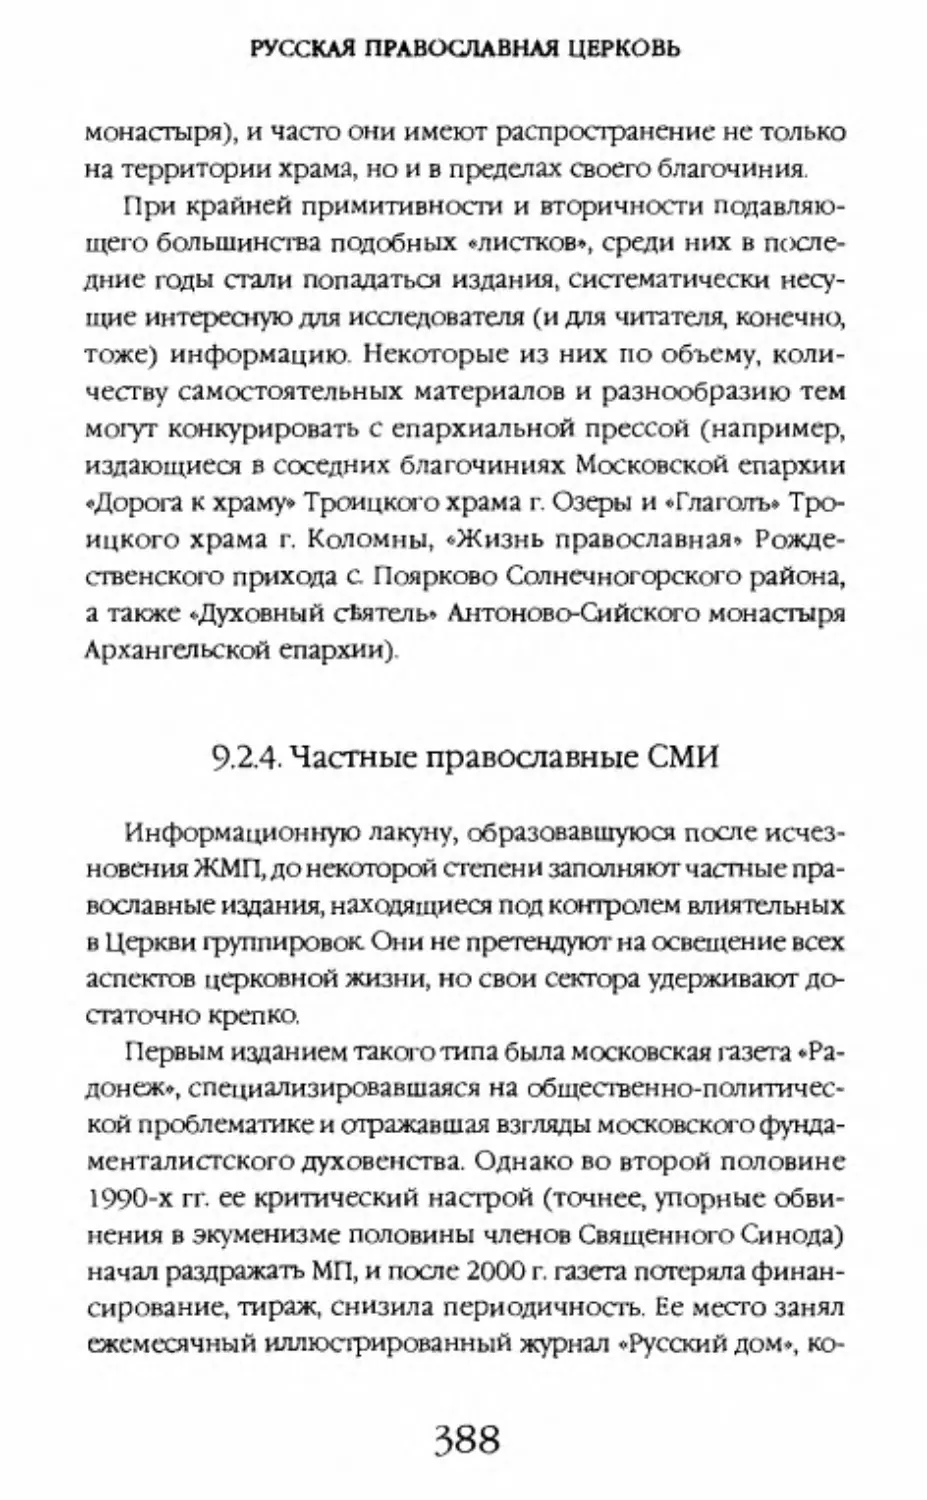 9.2.4. Частные православные СМИ